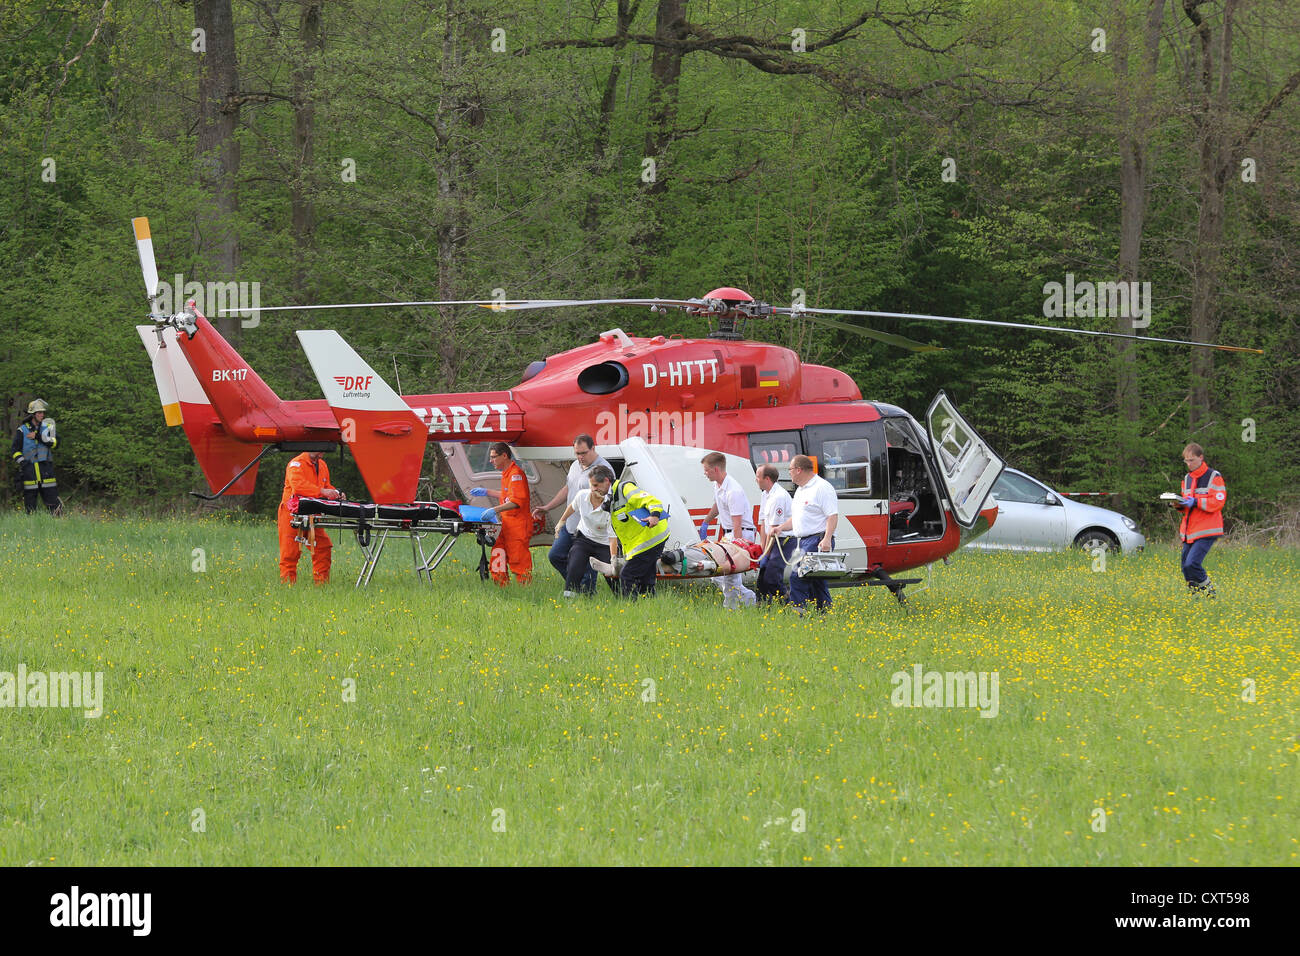 Salvataggio in elicottero in azione dopo arresto del velivolo in una zona boscosa a Hahnweide, Kirchheim unter Teck, Baden-Wuerttemberg Foto Stock